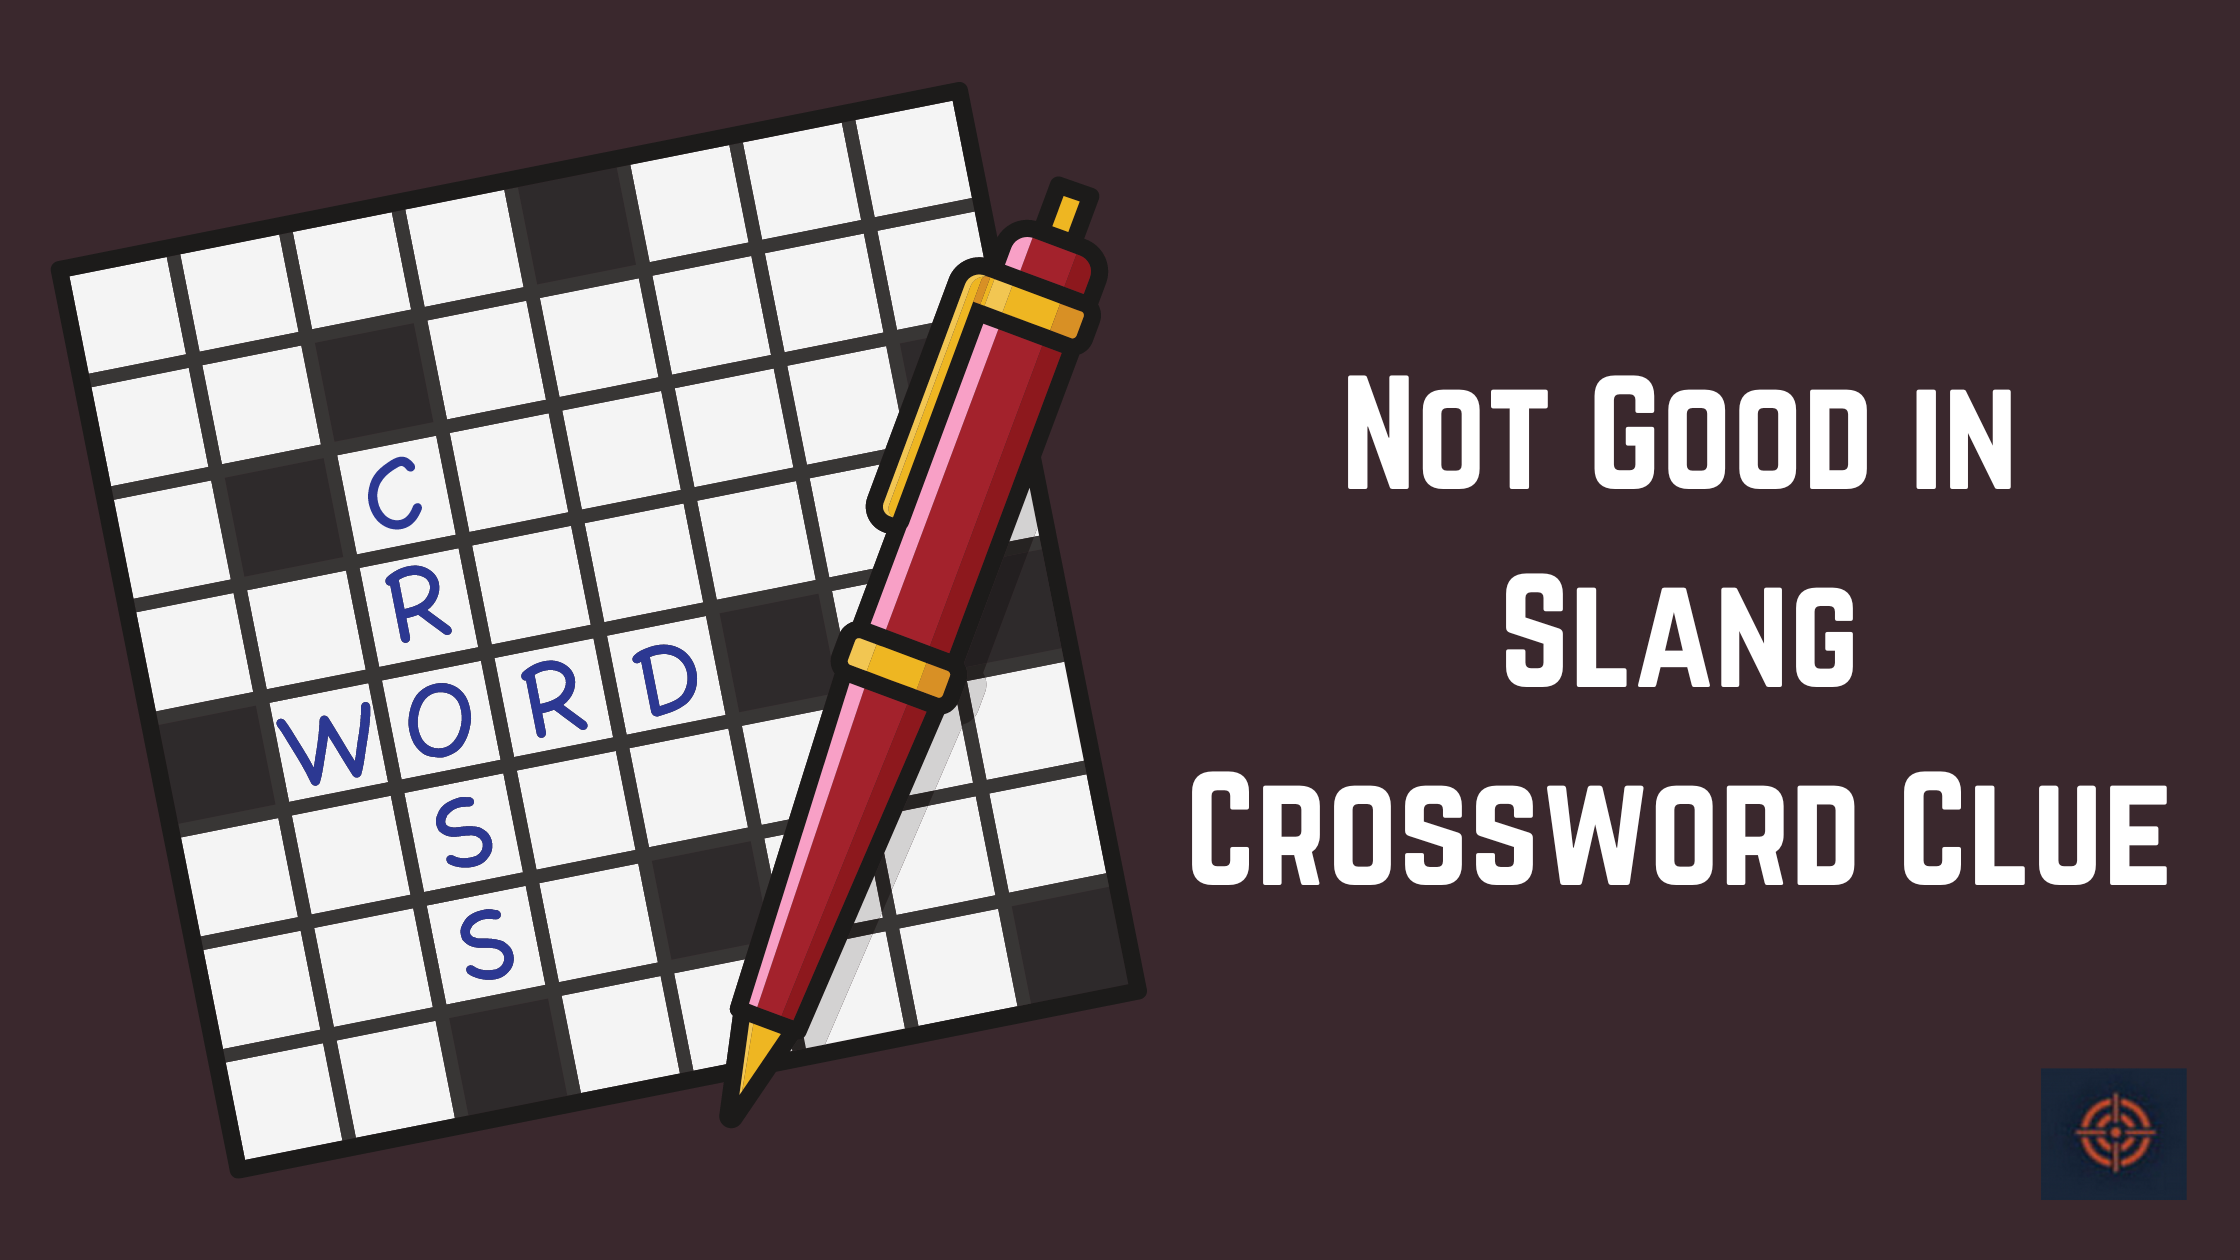 Not Good in Slang Crossword